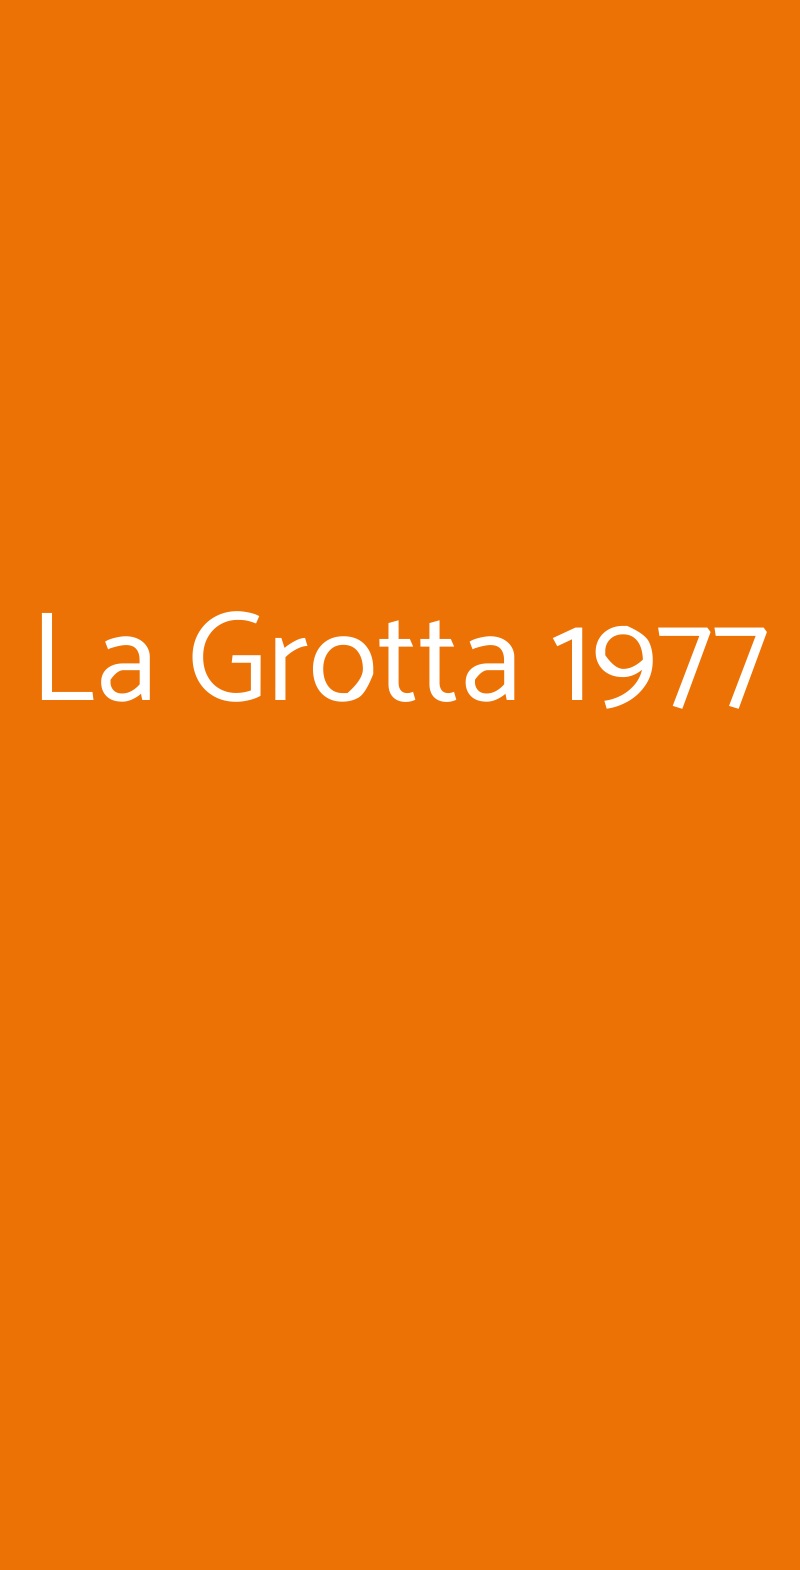 La Grotta 1977 Cagliari menù 1 pagina